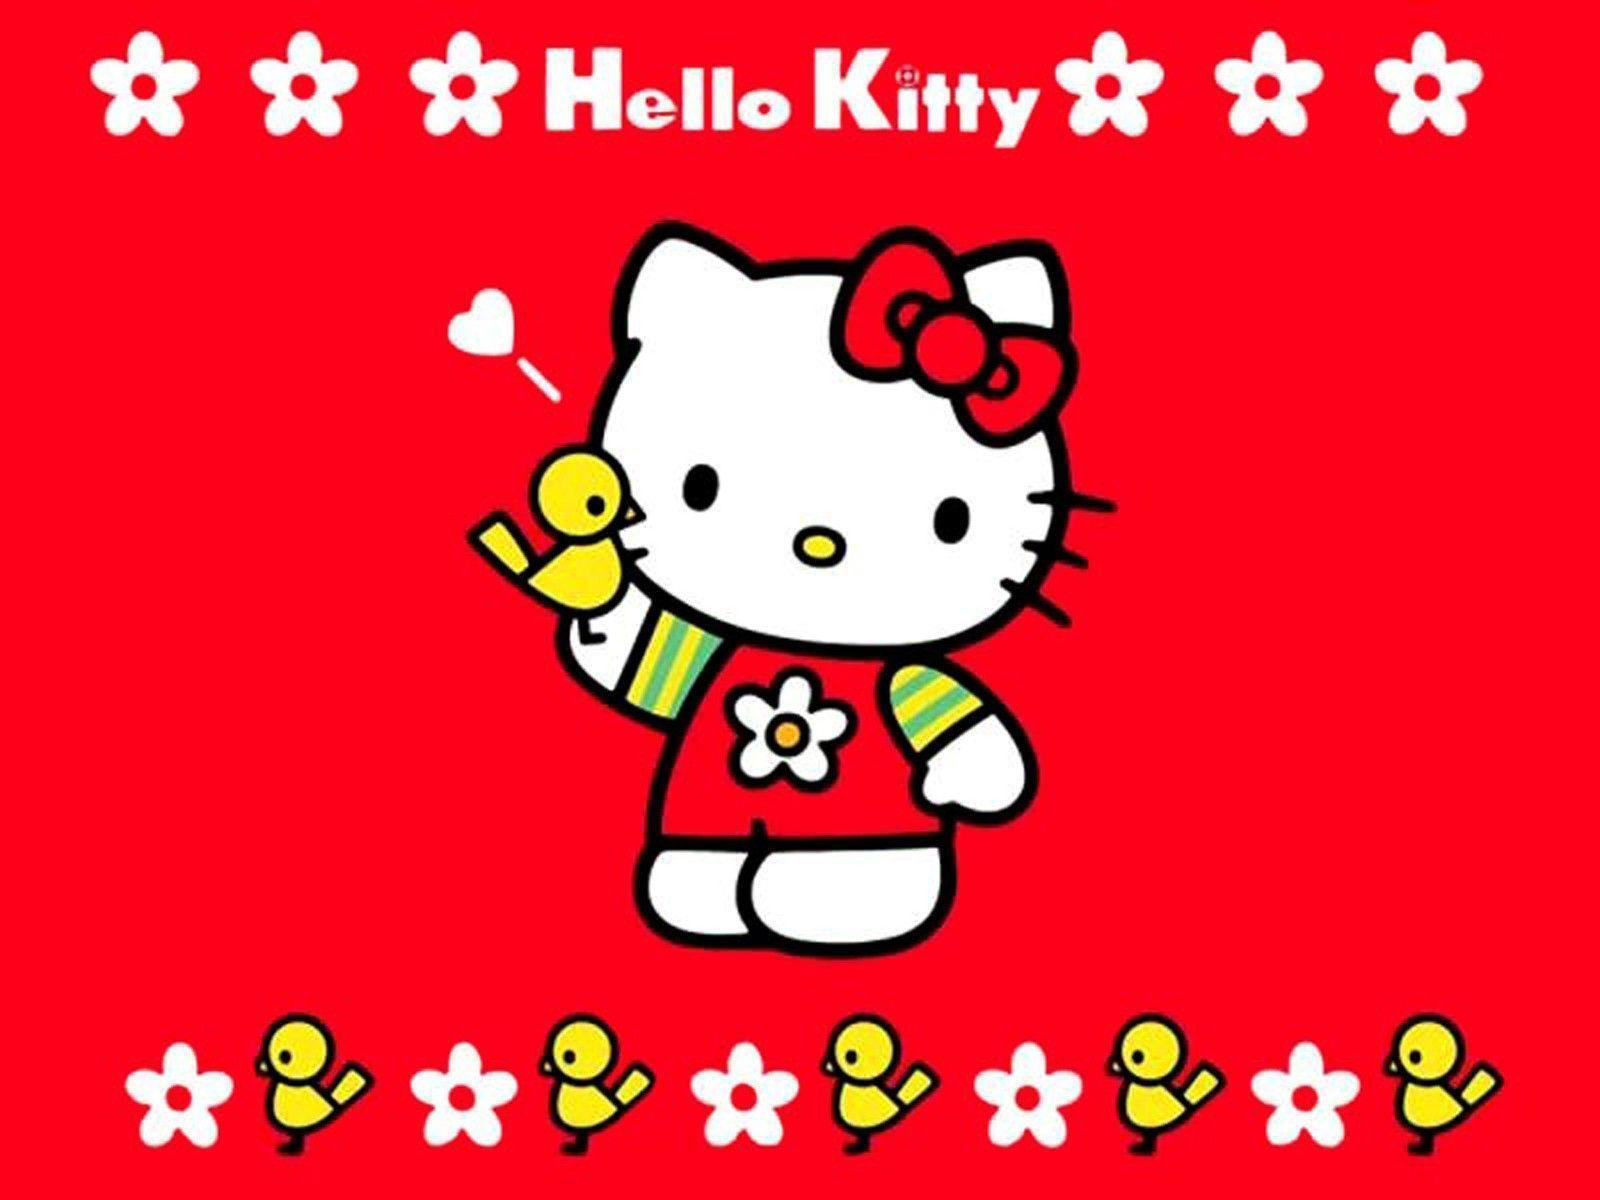 Bạn là fan của Hello Kitty? Hãy xem bộ sưu tập hình nền Hello Kitty đáng yêu của chúng tôi!